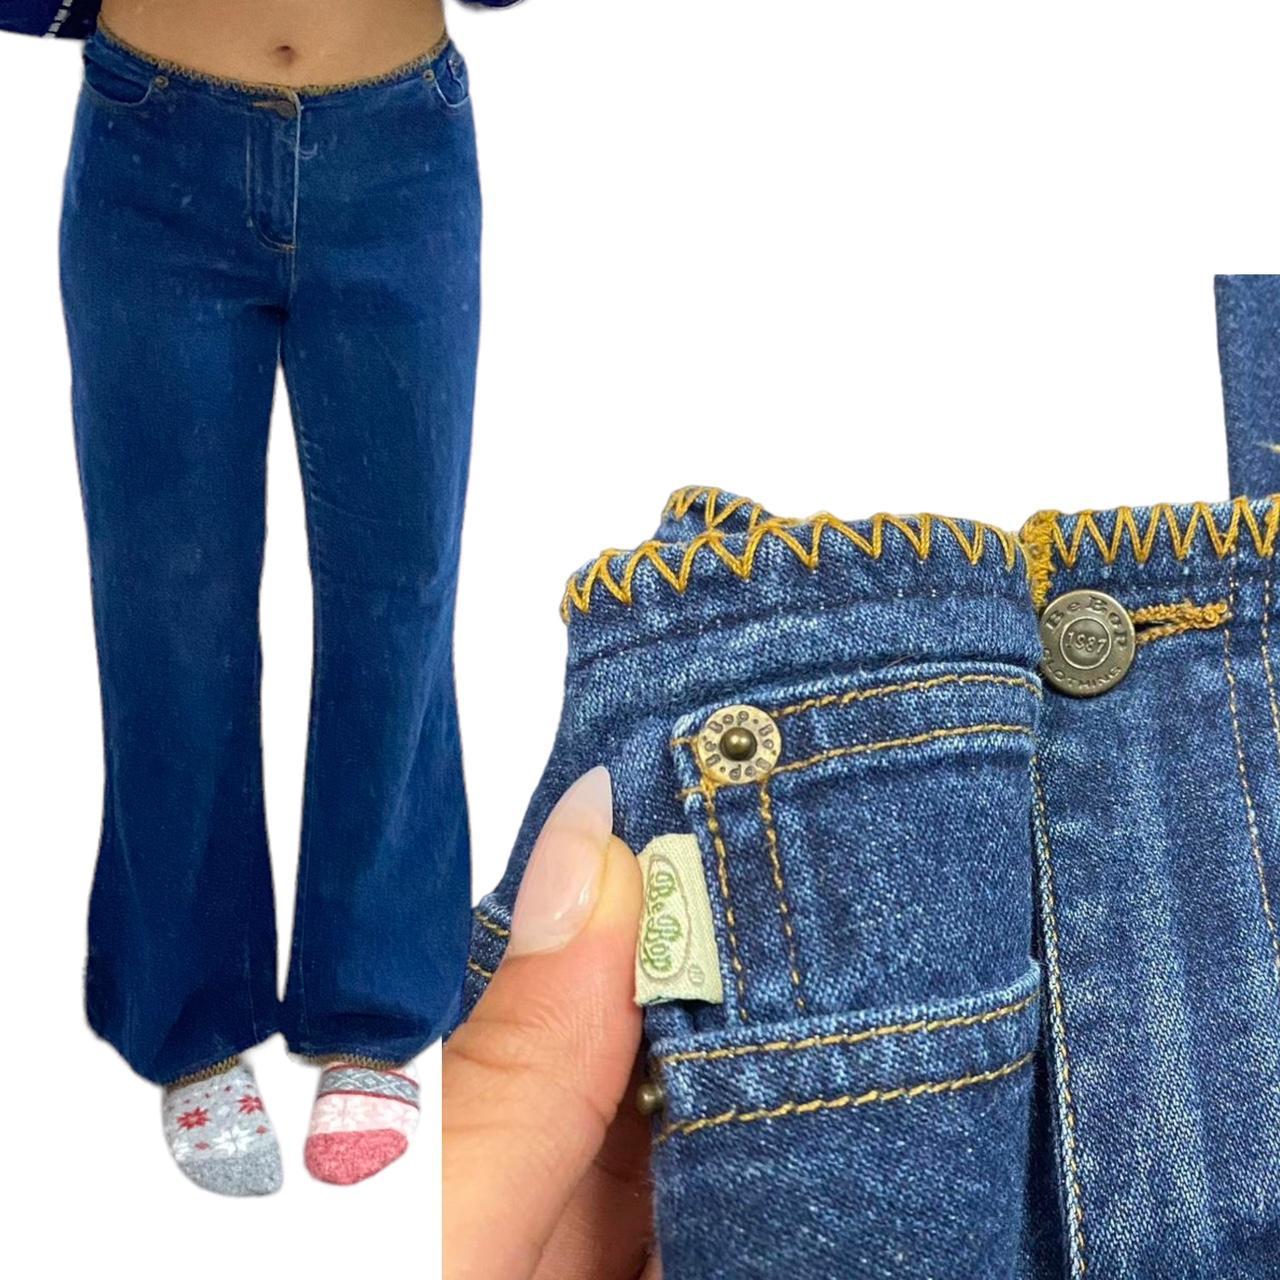 BeBop Women's Tan and Navy Jeans (2)